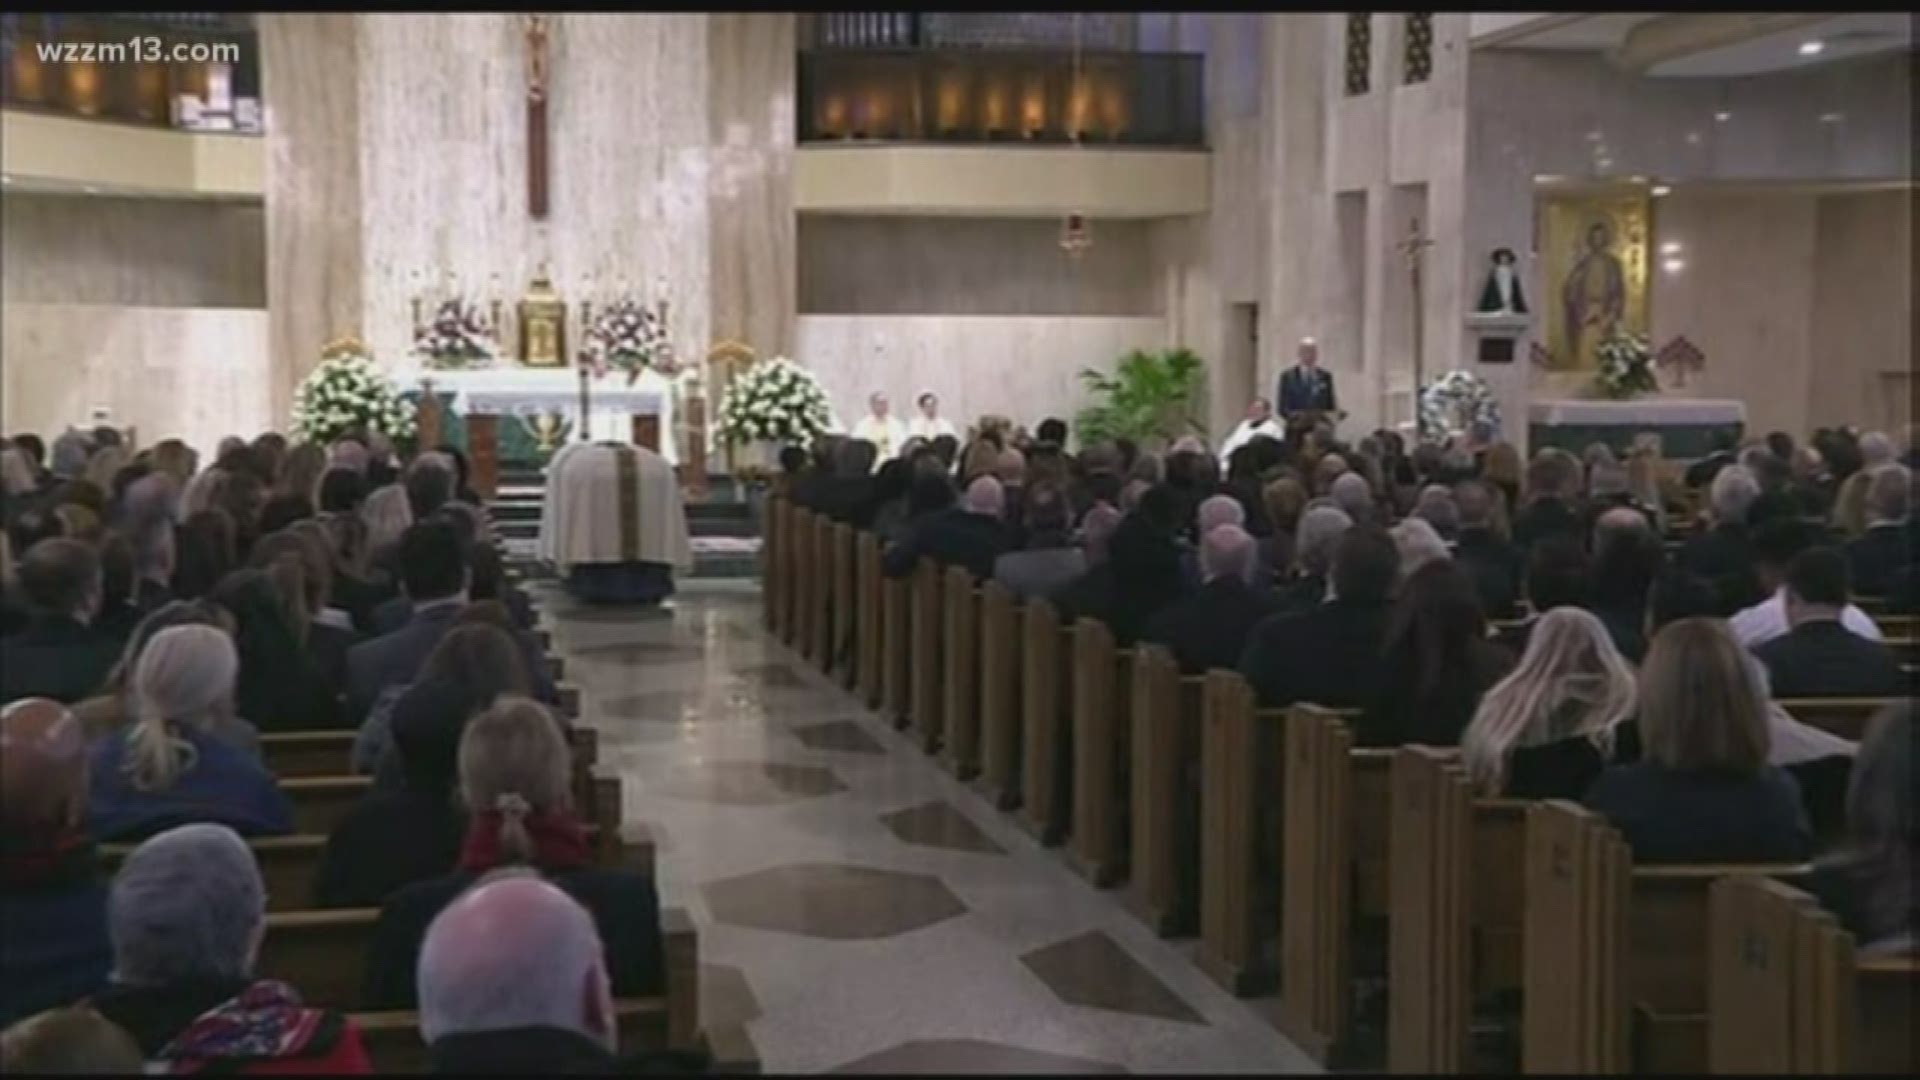 Rep. John Dingell's funeral held in Dearborn